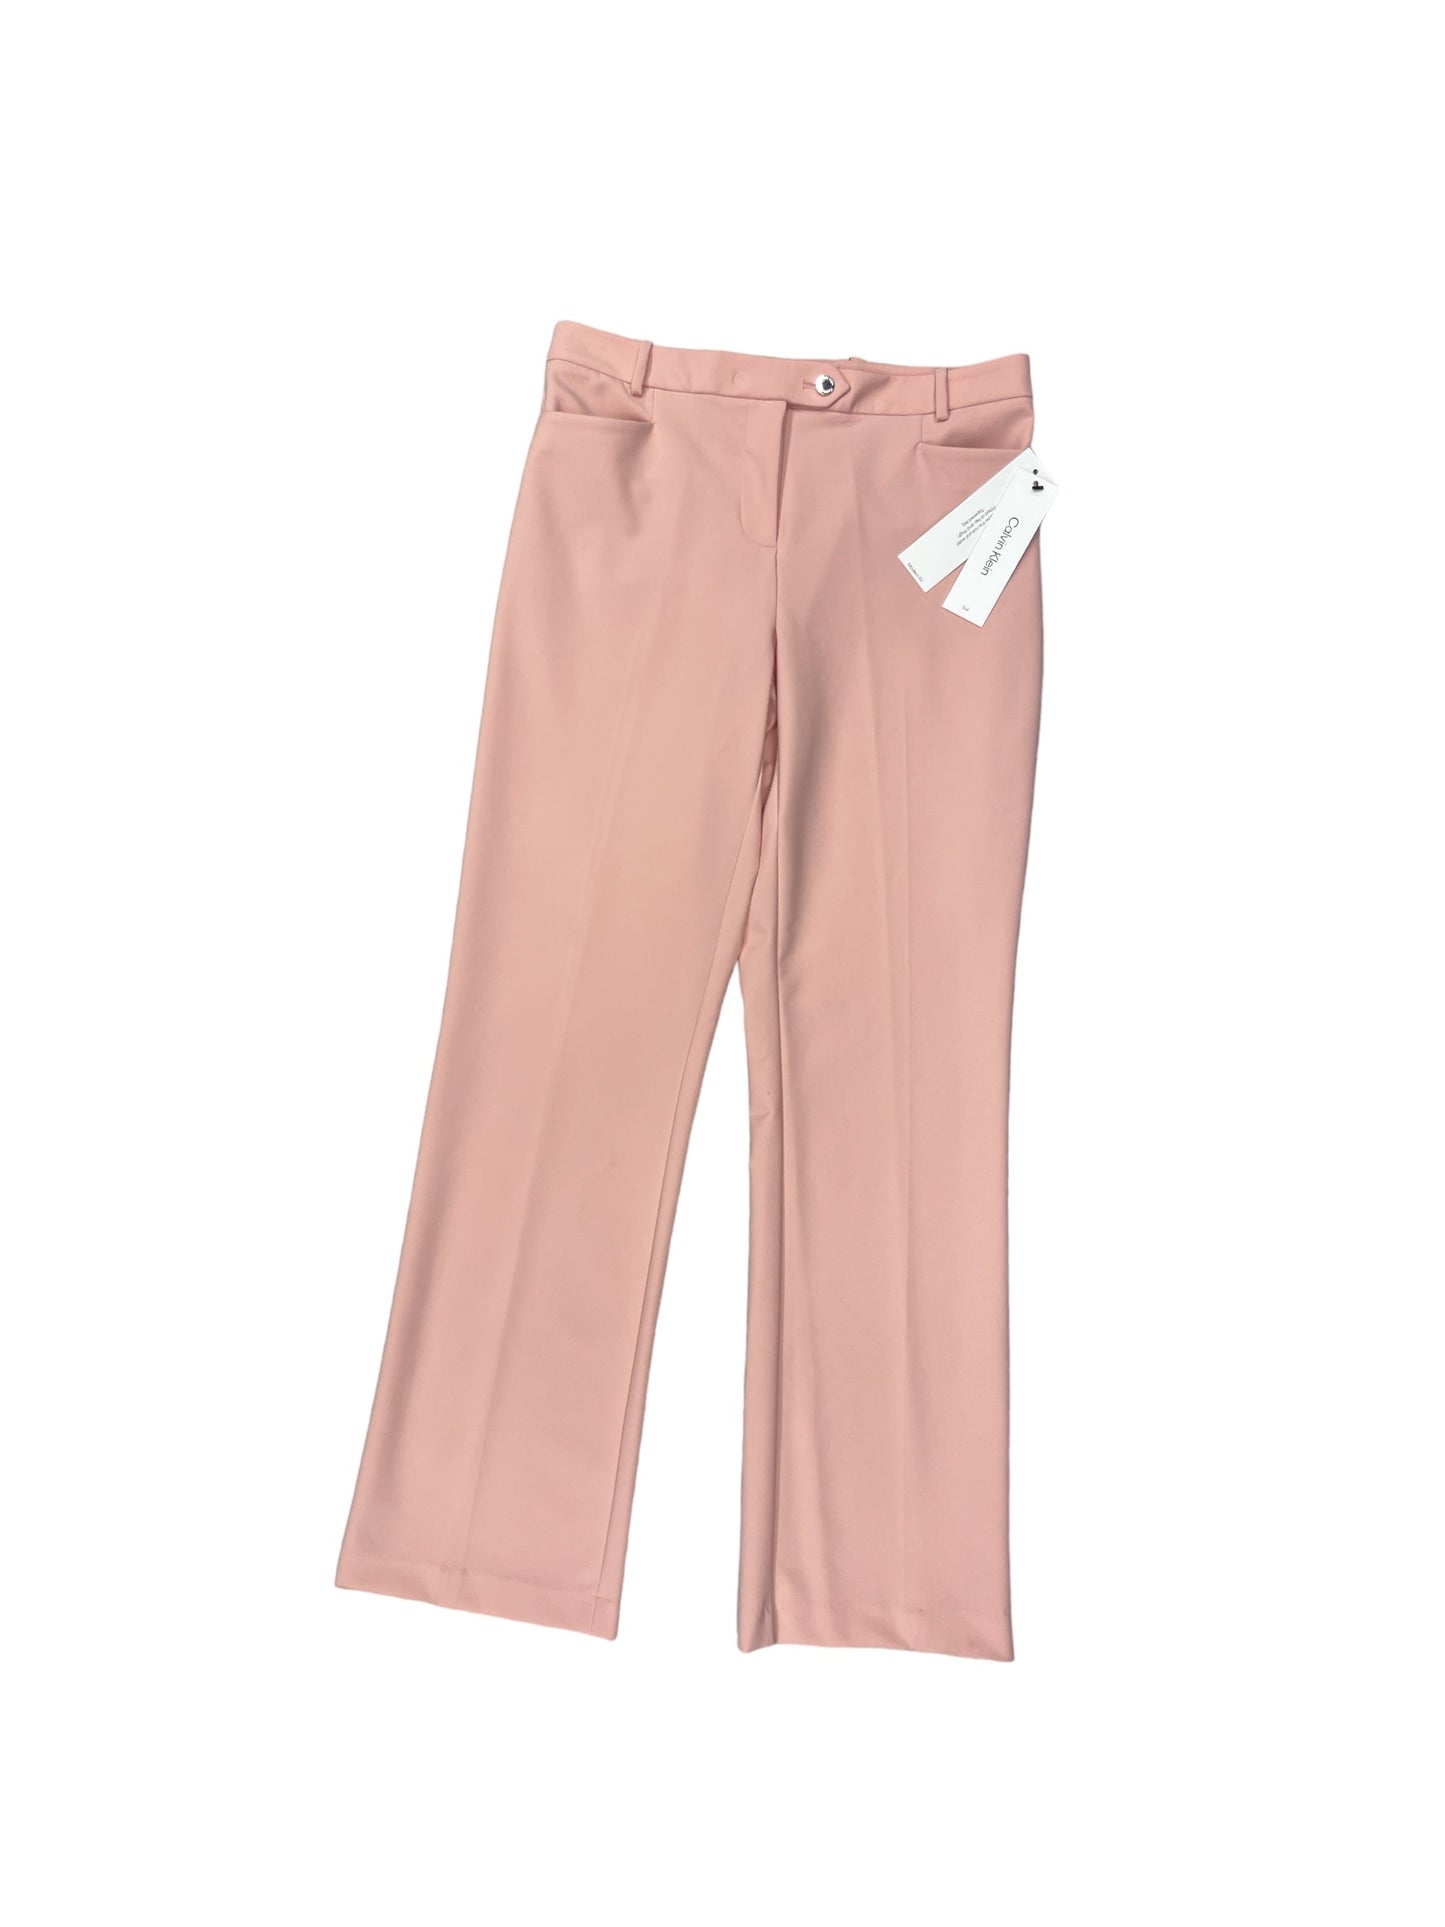 Pink Pants Dress Calvin Klein, Size 2